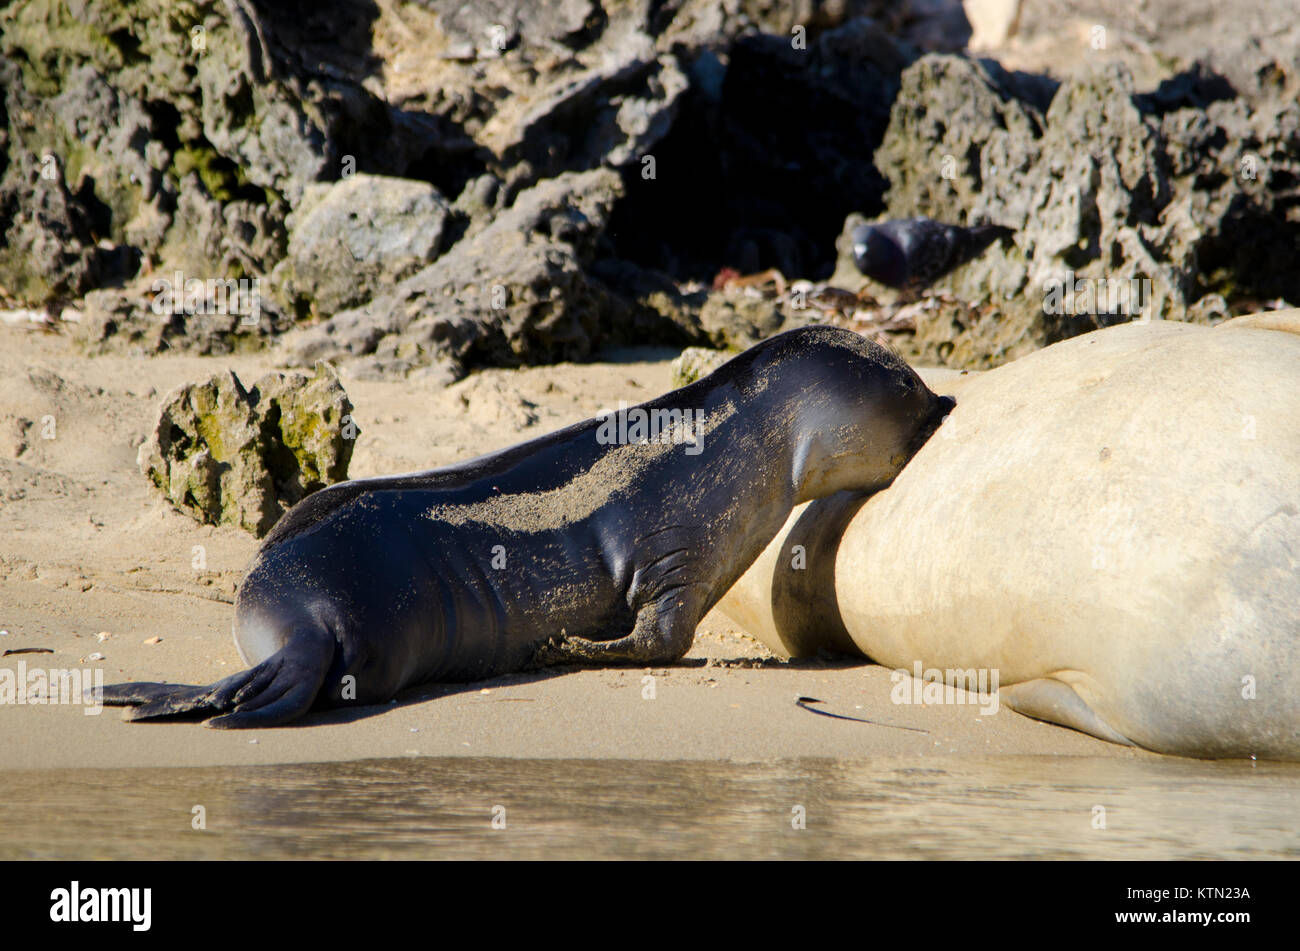 L'éléphant femelle seal pup et (Mirounga leonina) Îles de Shoalwater Marine Park, Australie occidentale Banque D'Images